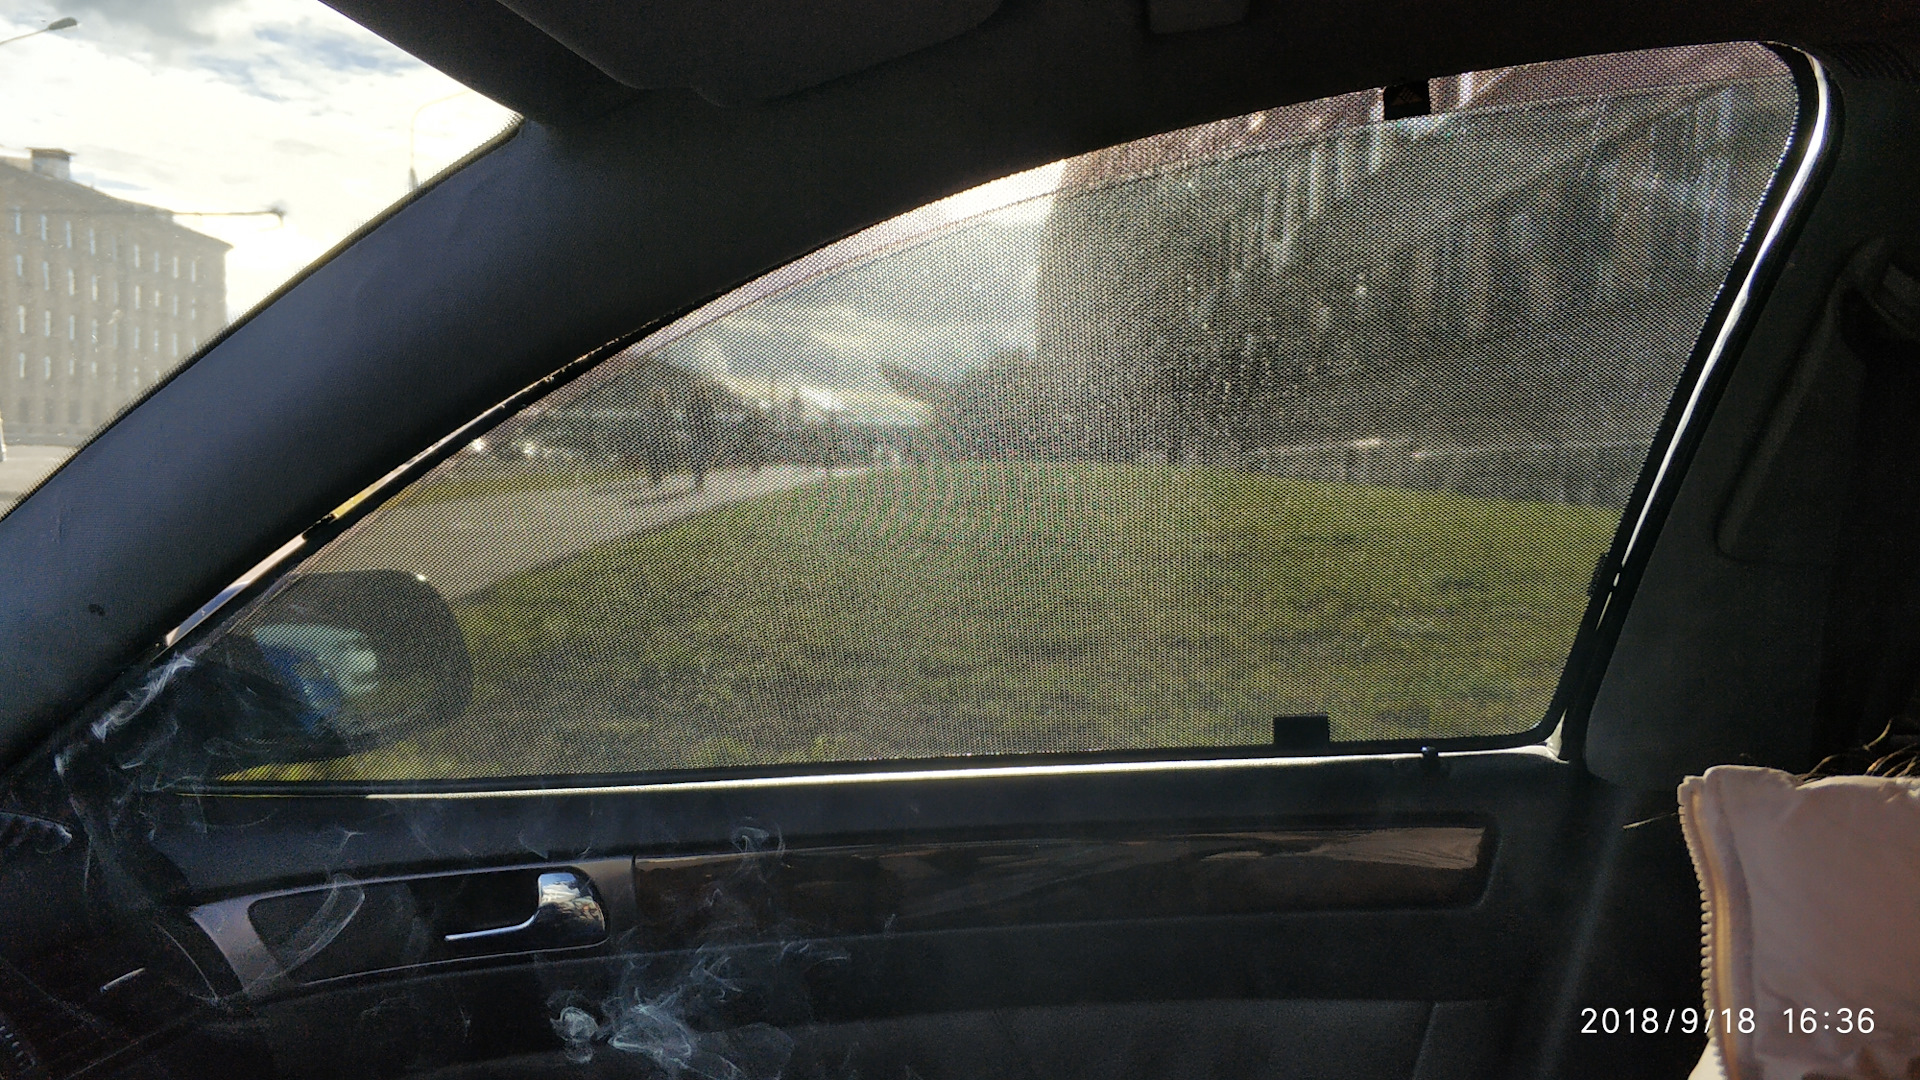 Шторки ауди а6. Шторки на передние ктелда Ауди ку 3. Audi q7 шторки на окна. Каркасные шторки на Ауди а5. Audi q7 16 год шторки на окна.